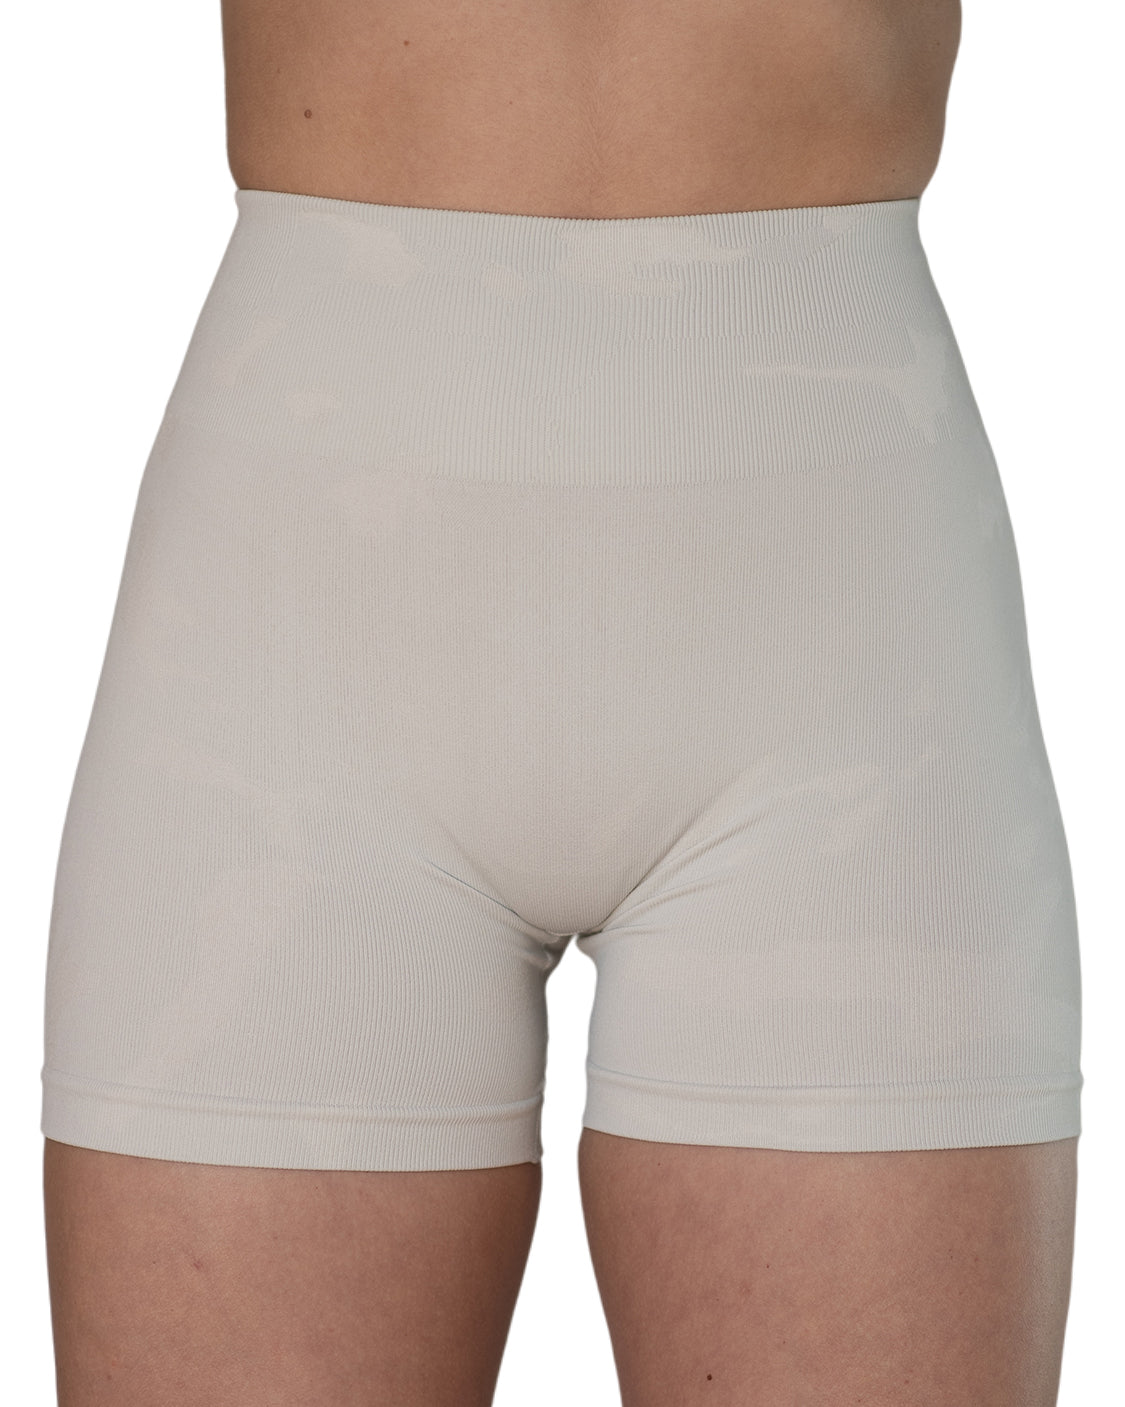  AUROLA Dream Collection Workout Shorts For Women Scrunch  Seamless Soft High Waist Gym Shorts